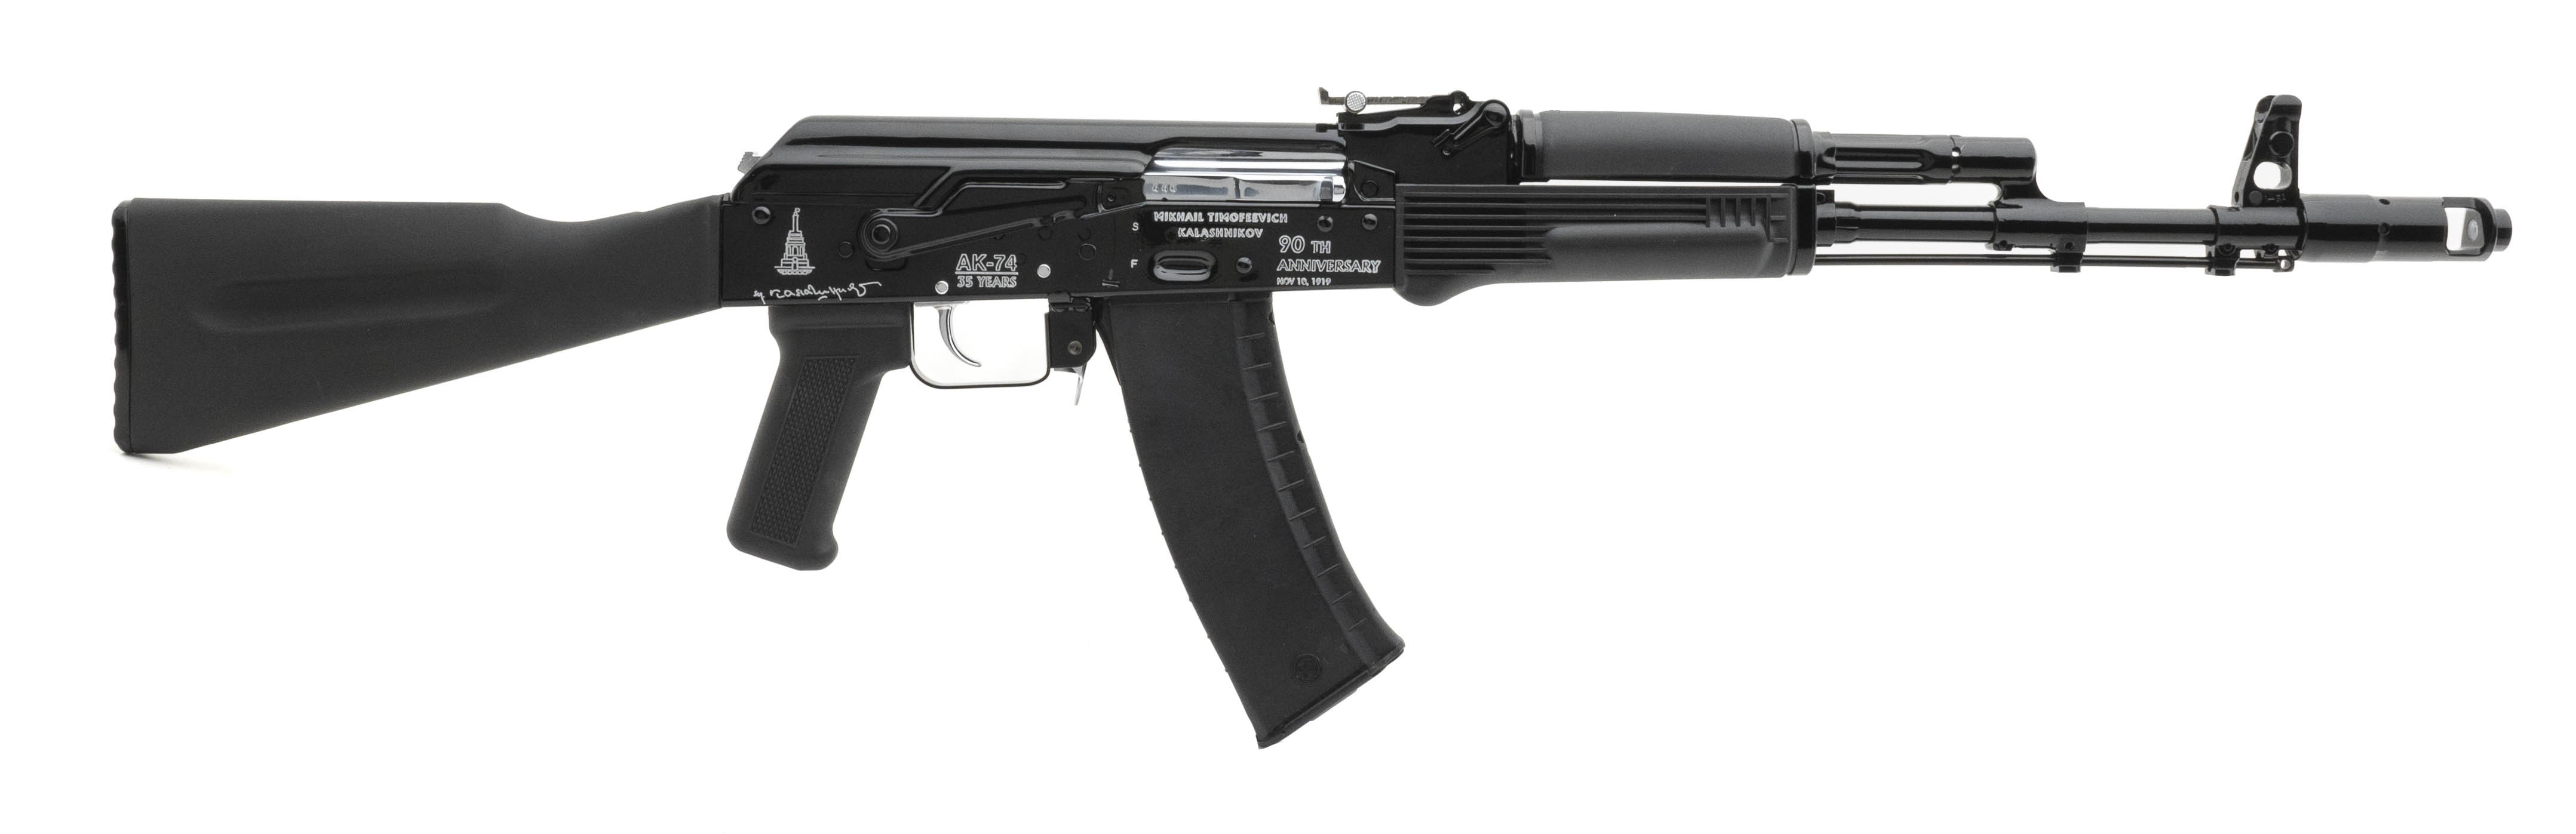 Arsenal Saiga AK 74 90th Anniversary Silver Edition Jubilee Rifle 5.45x39  (COM3011)